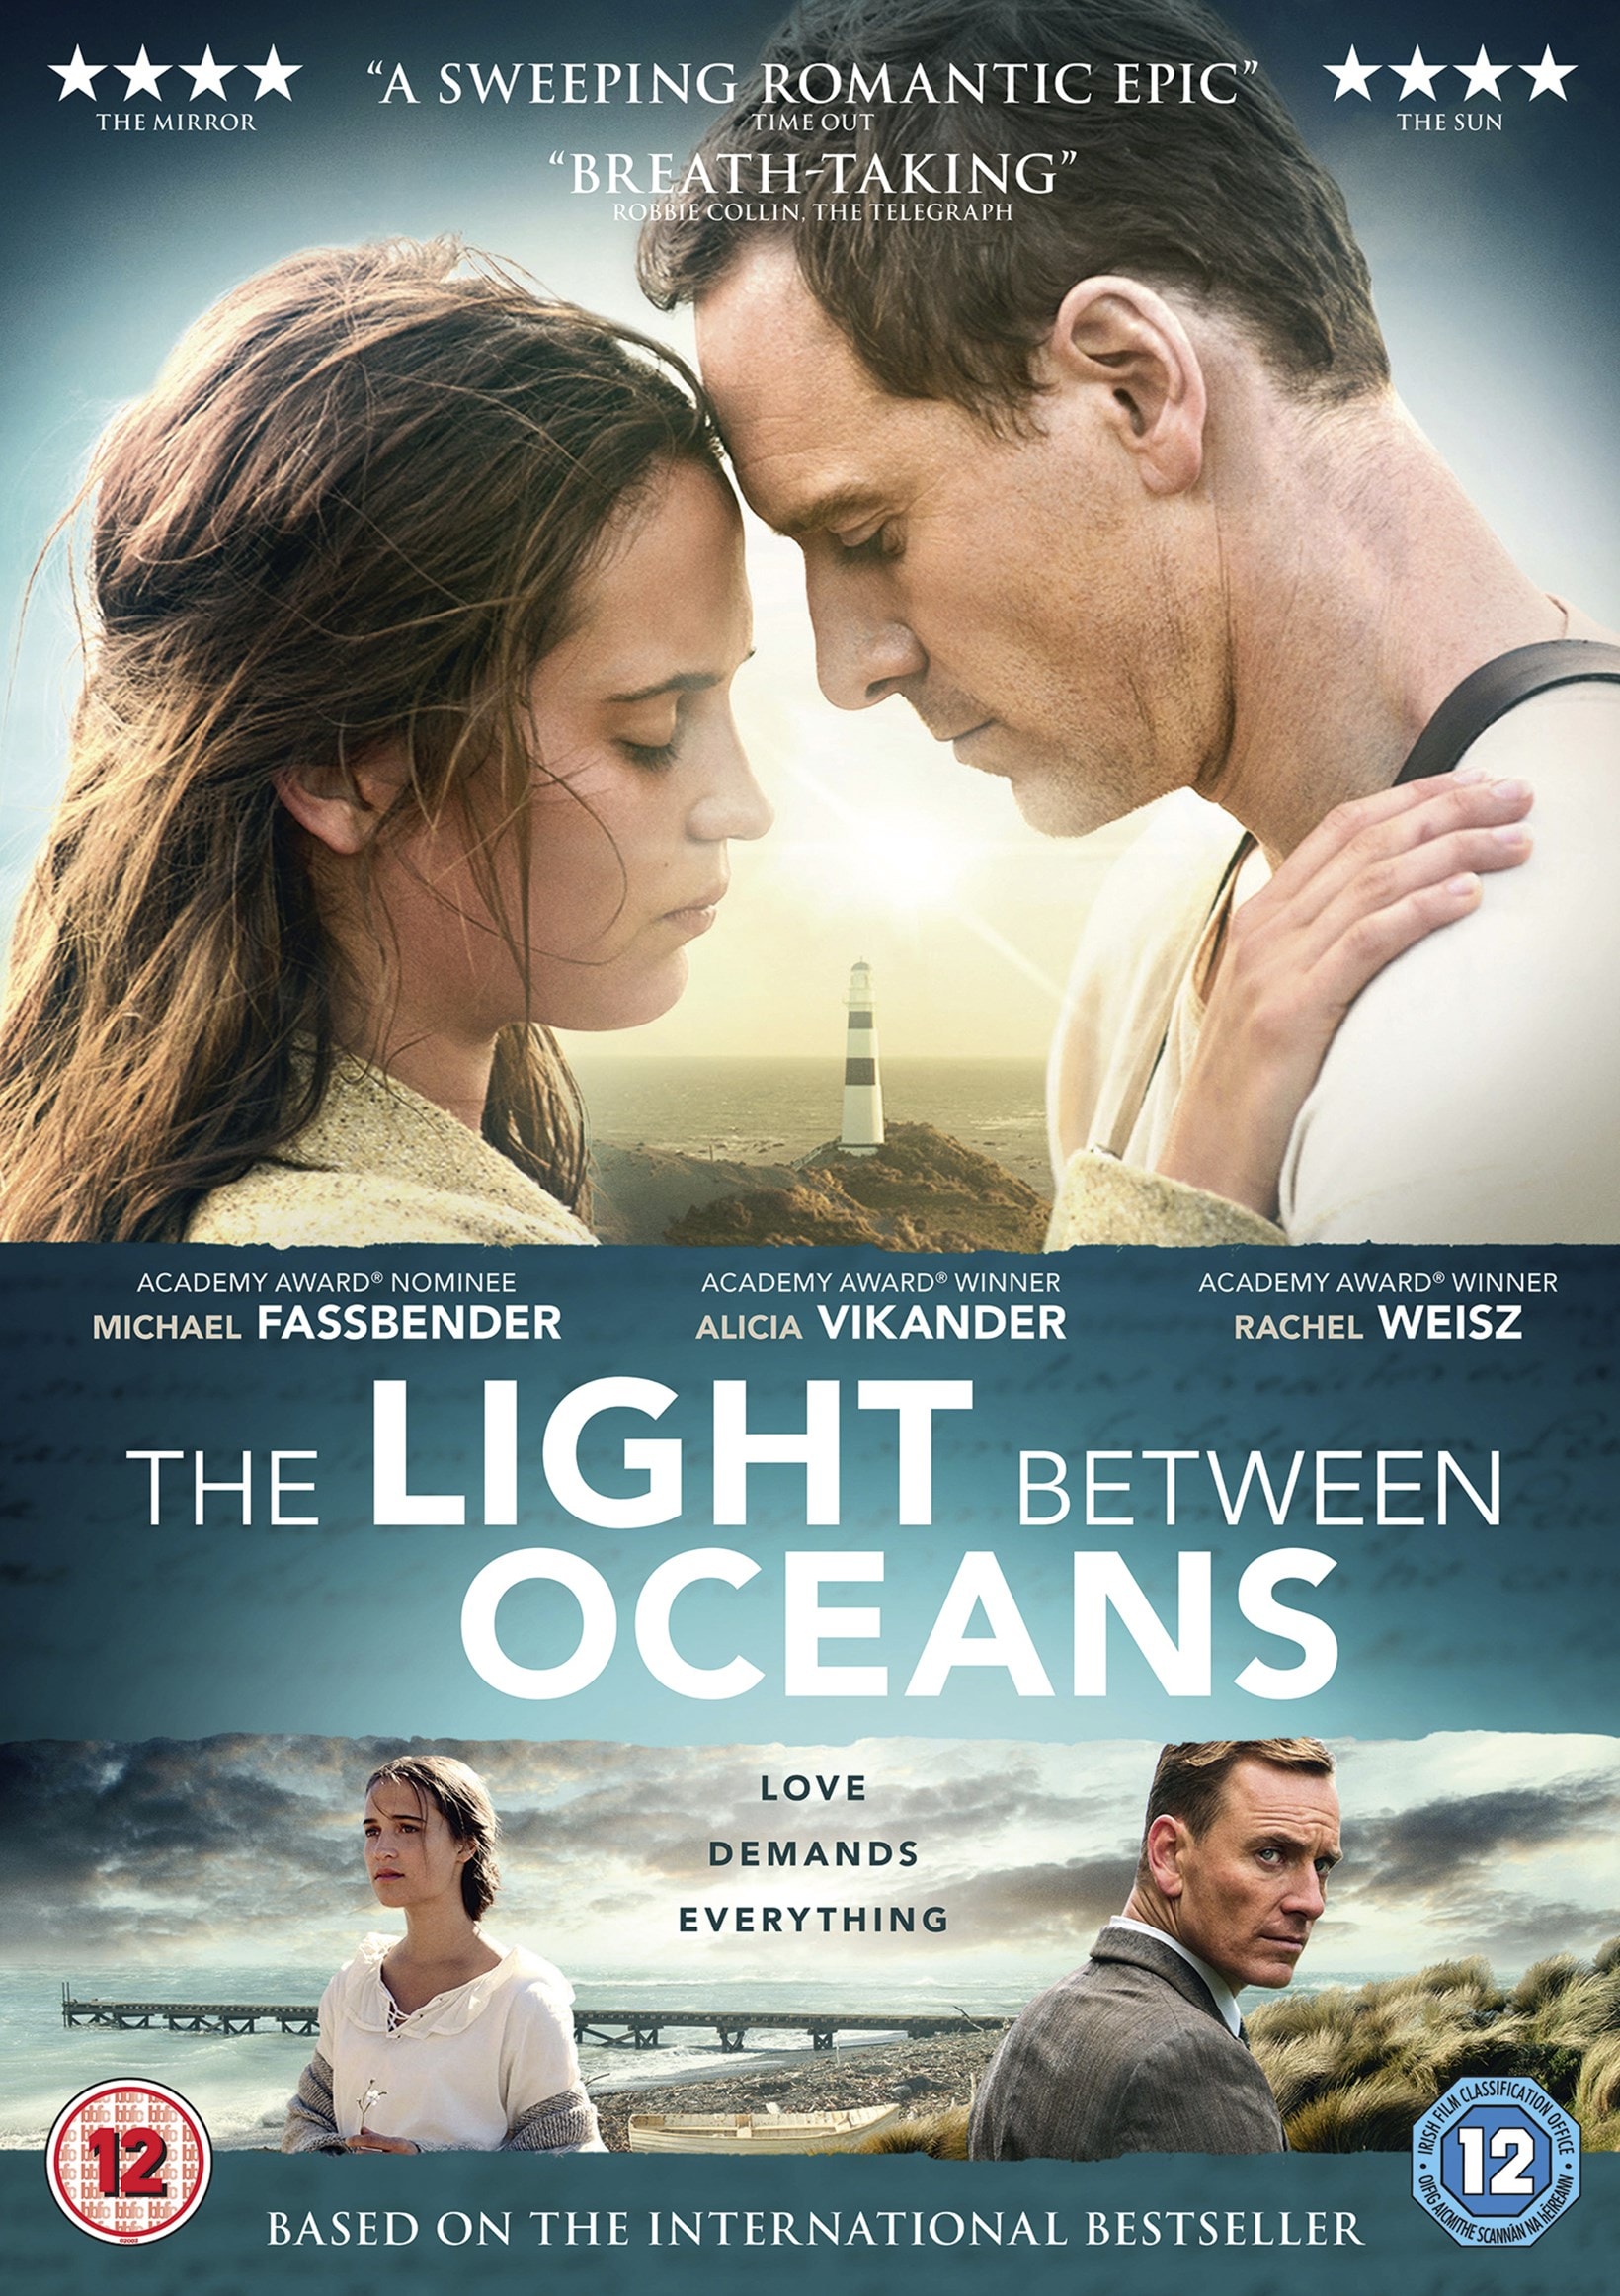 The Light Between Oceans - Staff Pick